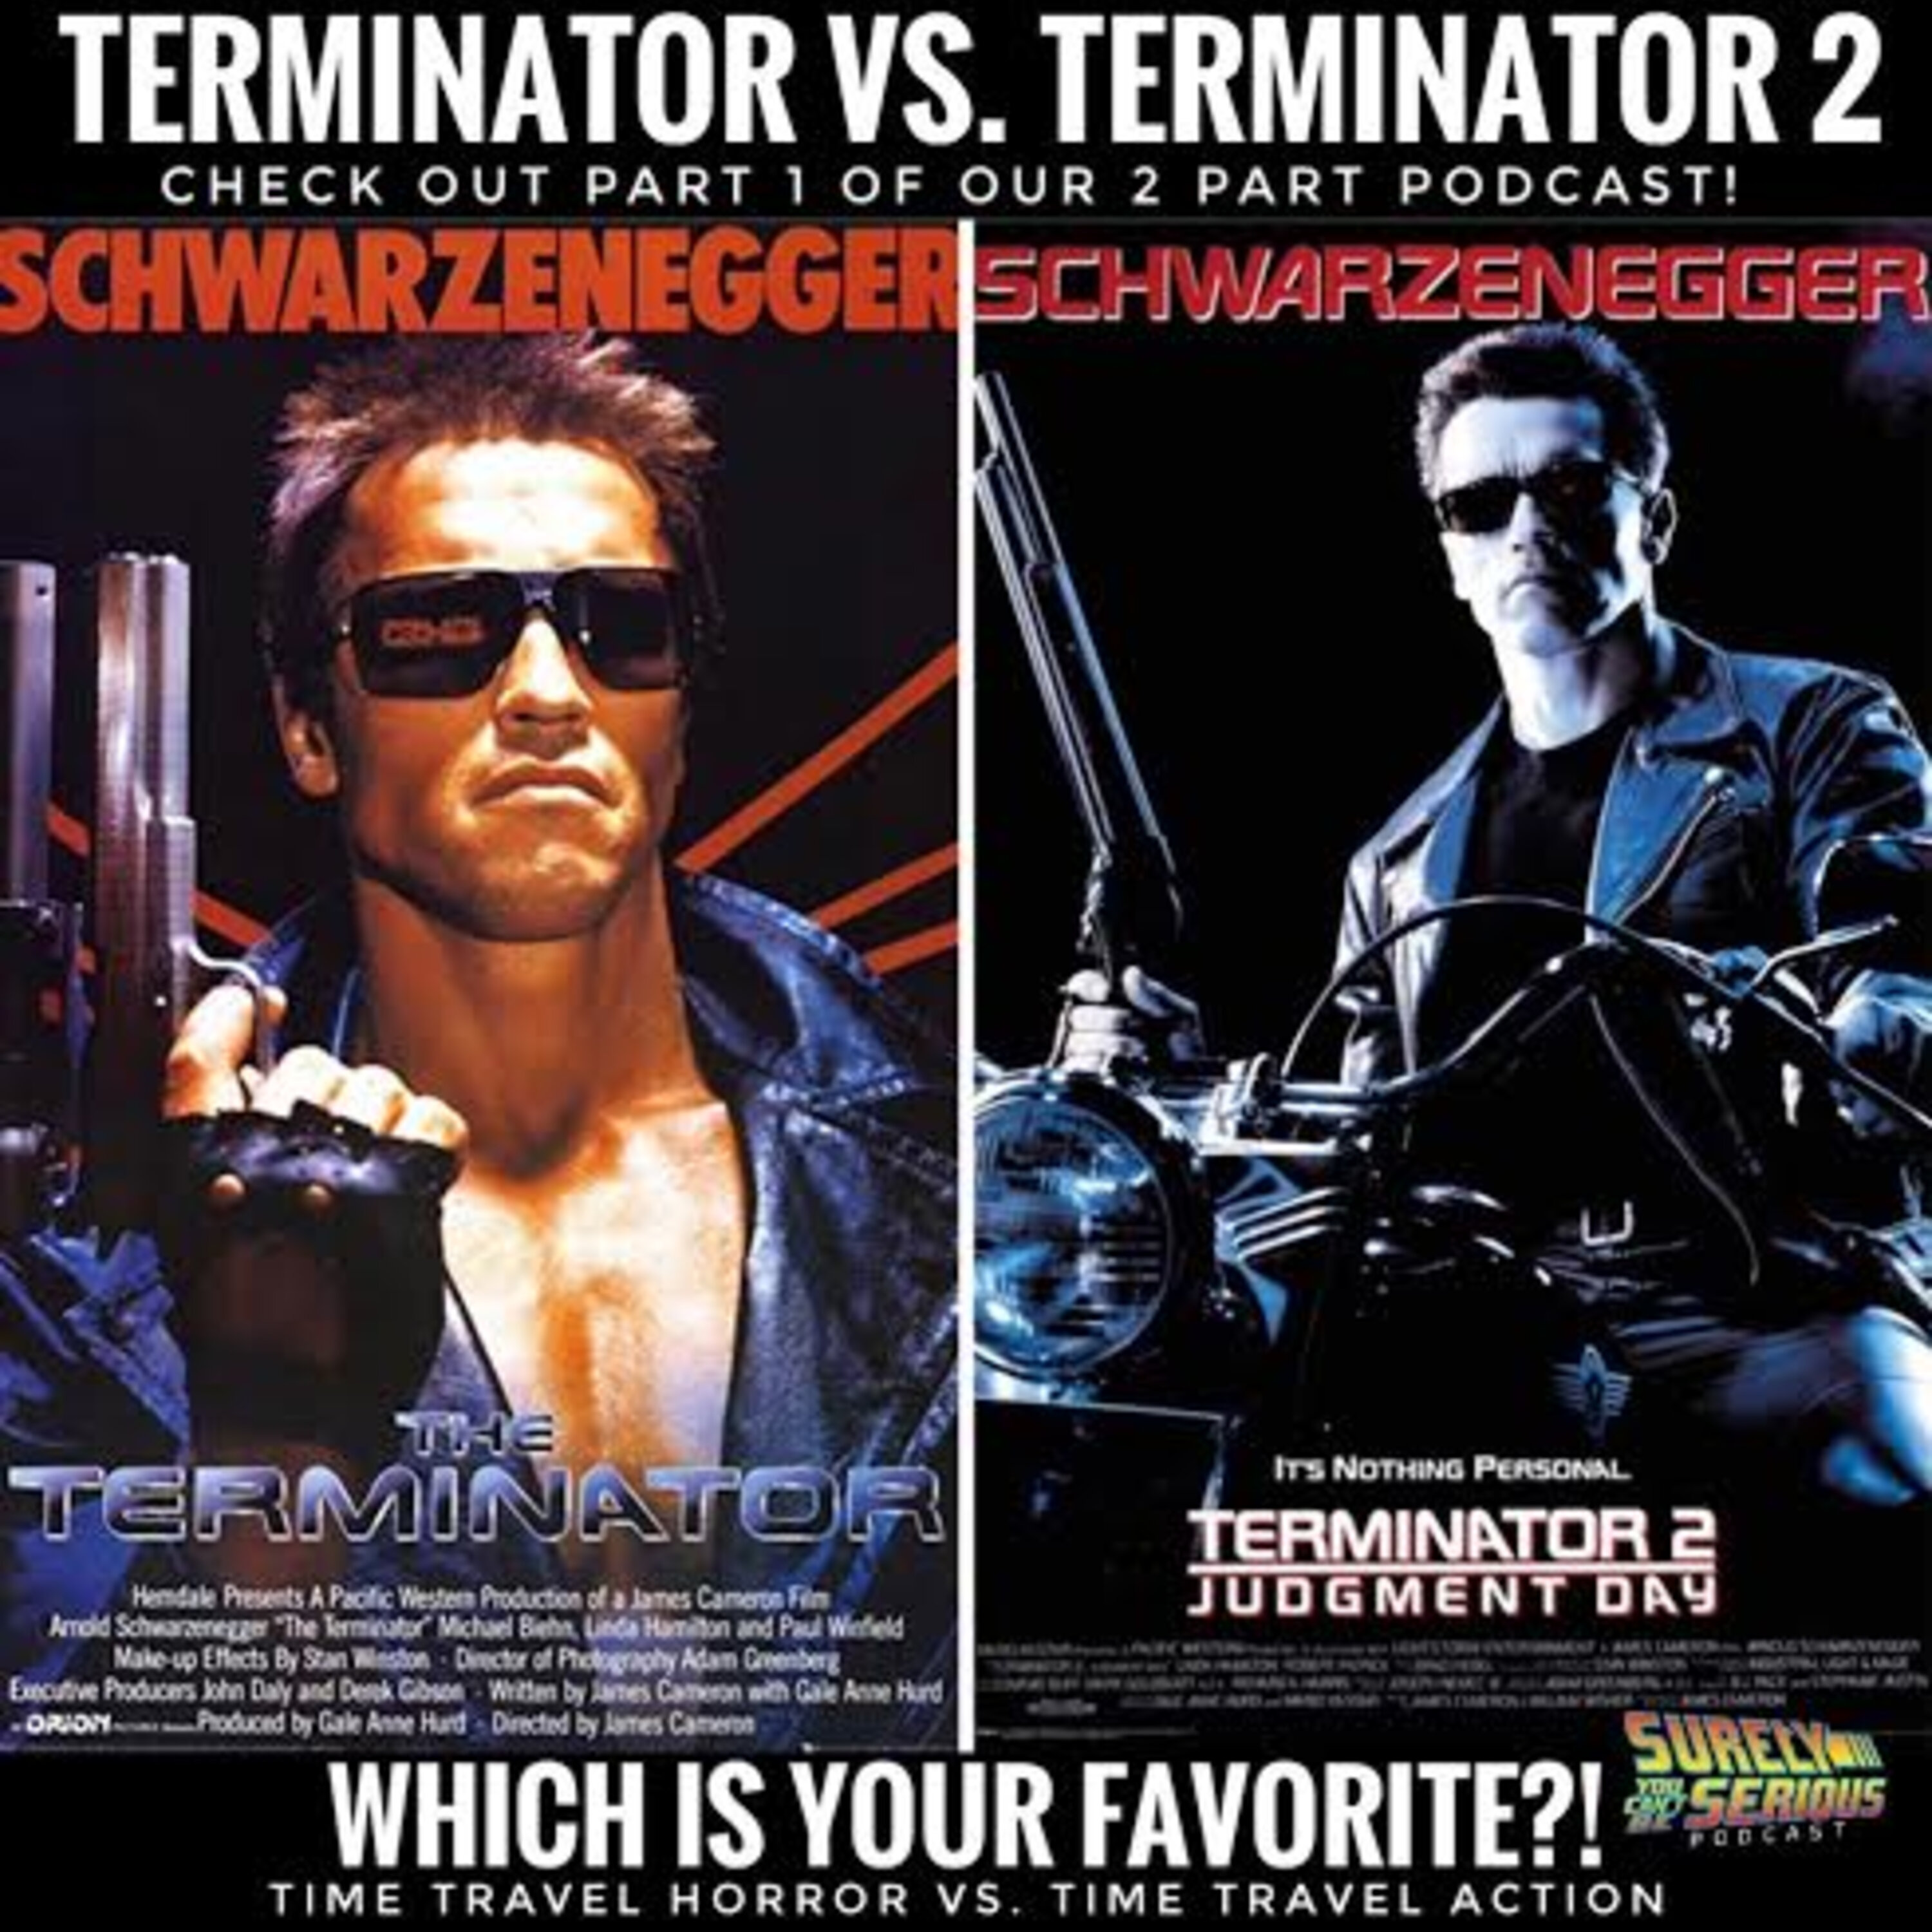 Terminator (1984) vs. Terminator 2 (1991): Part 1 Image